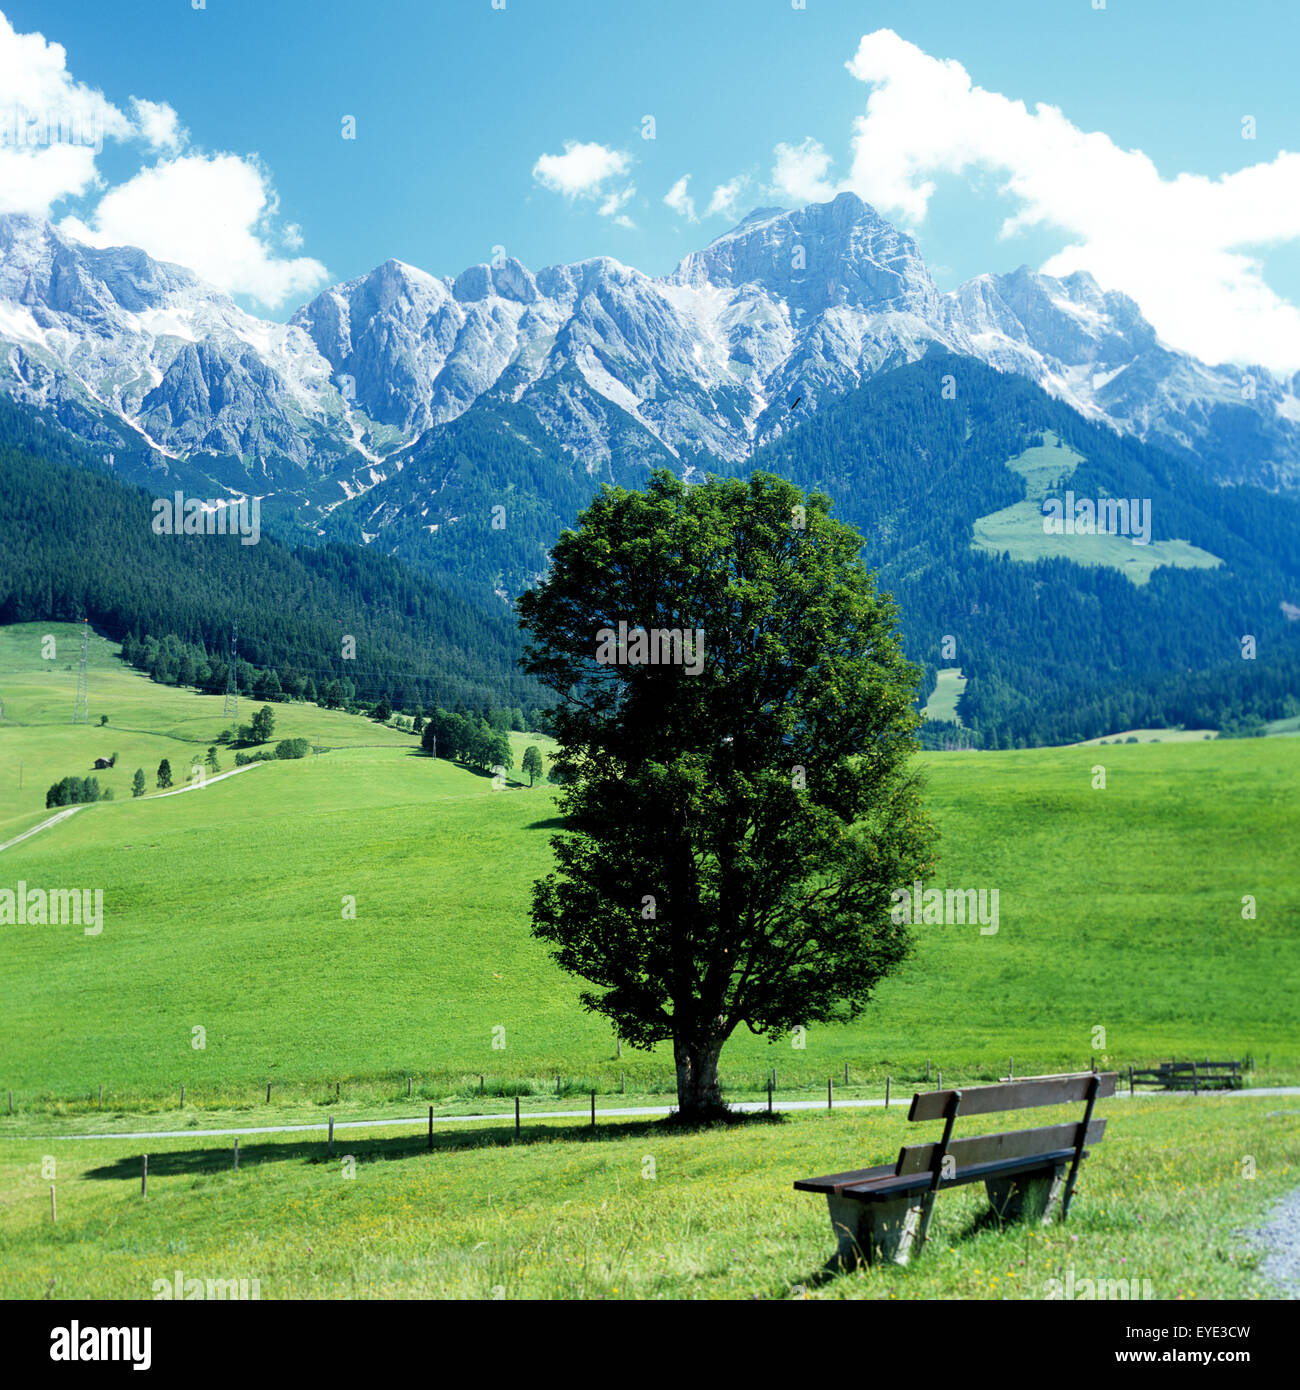 Berchtesgadener Alpen, Steinernes Meer, Salisburghese, Hochkoenigmassiv, Hochkoenig, Oesterreich, Landschaft Foto Stock